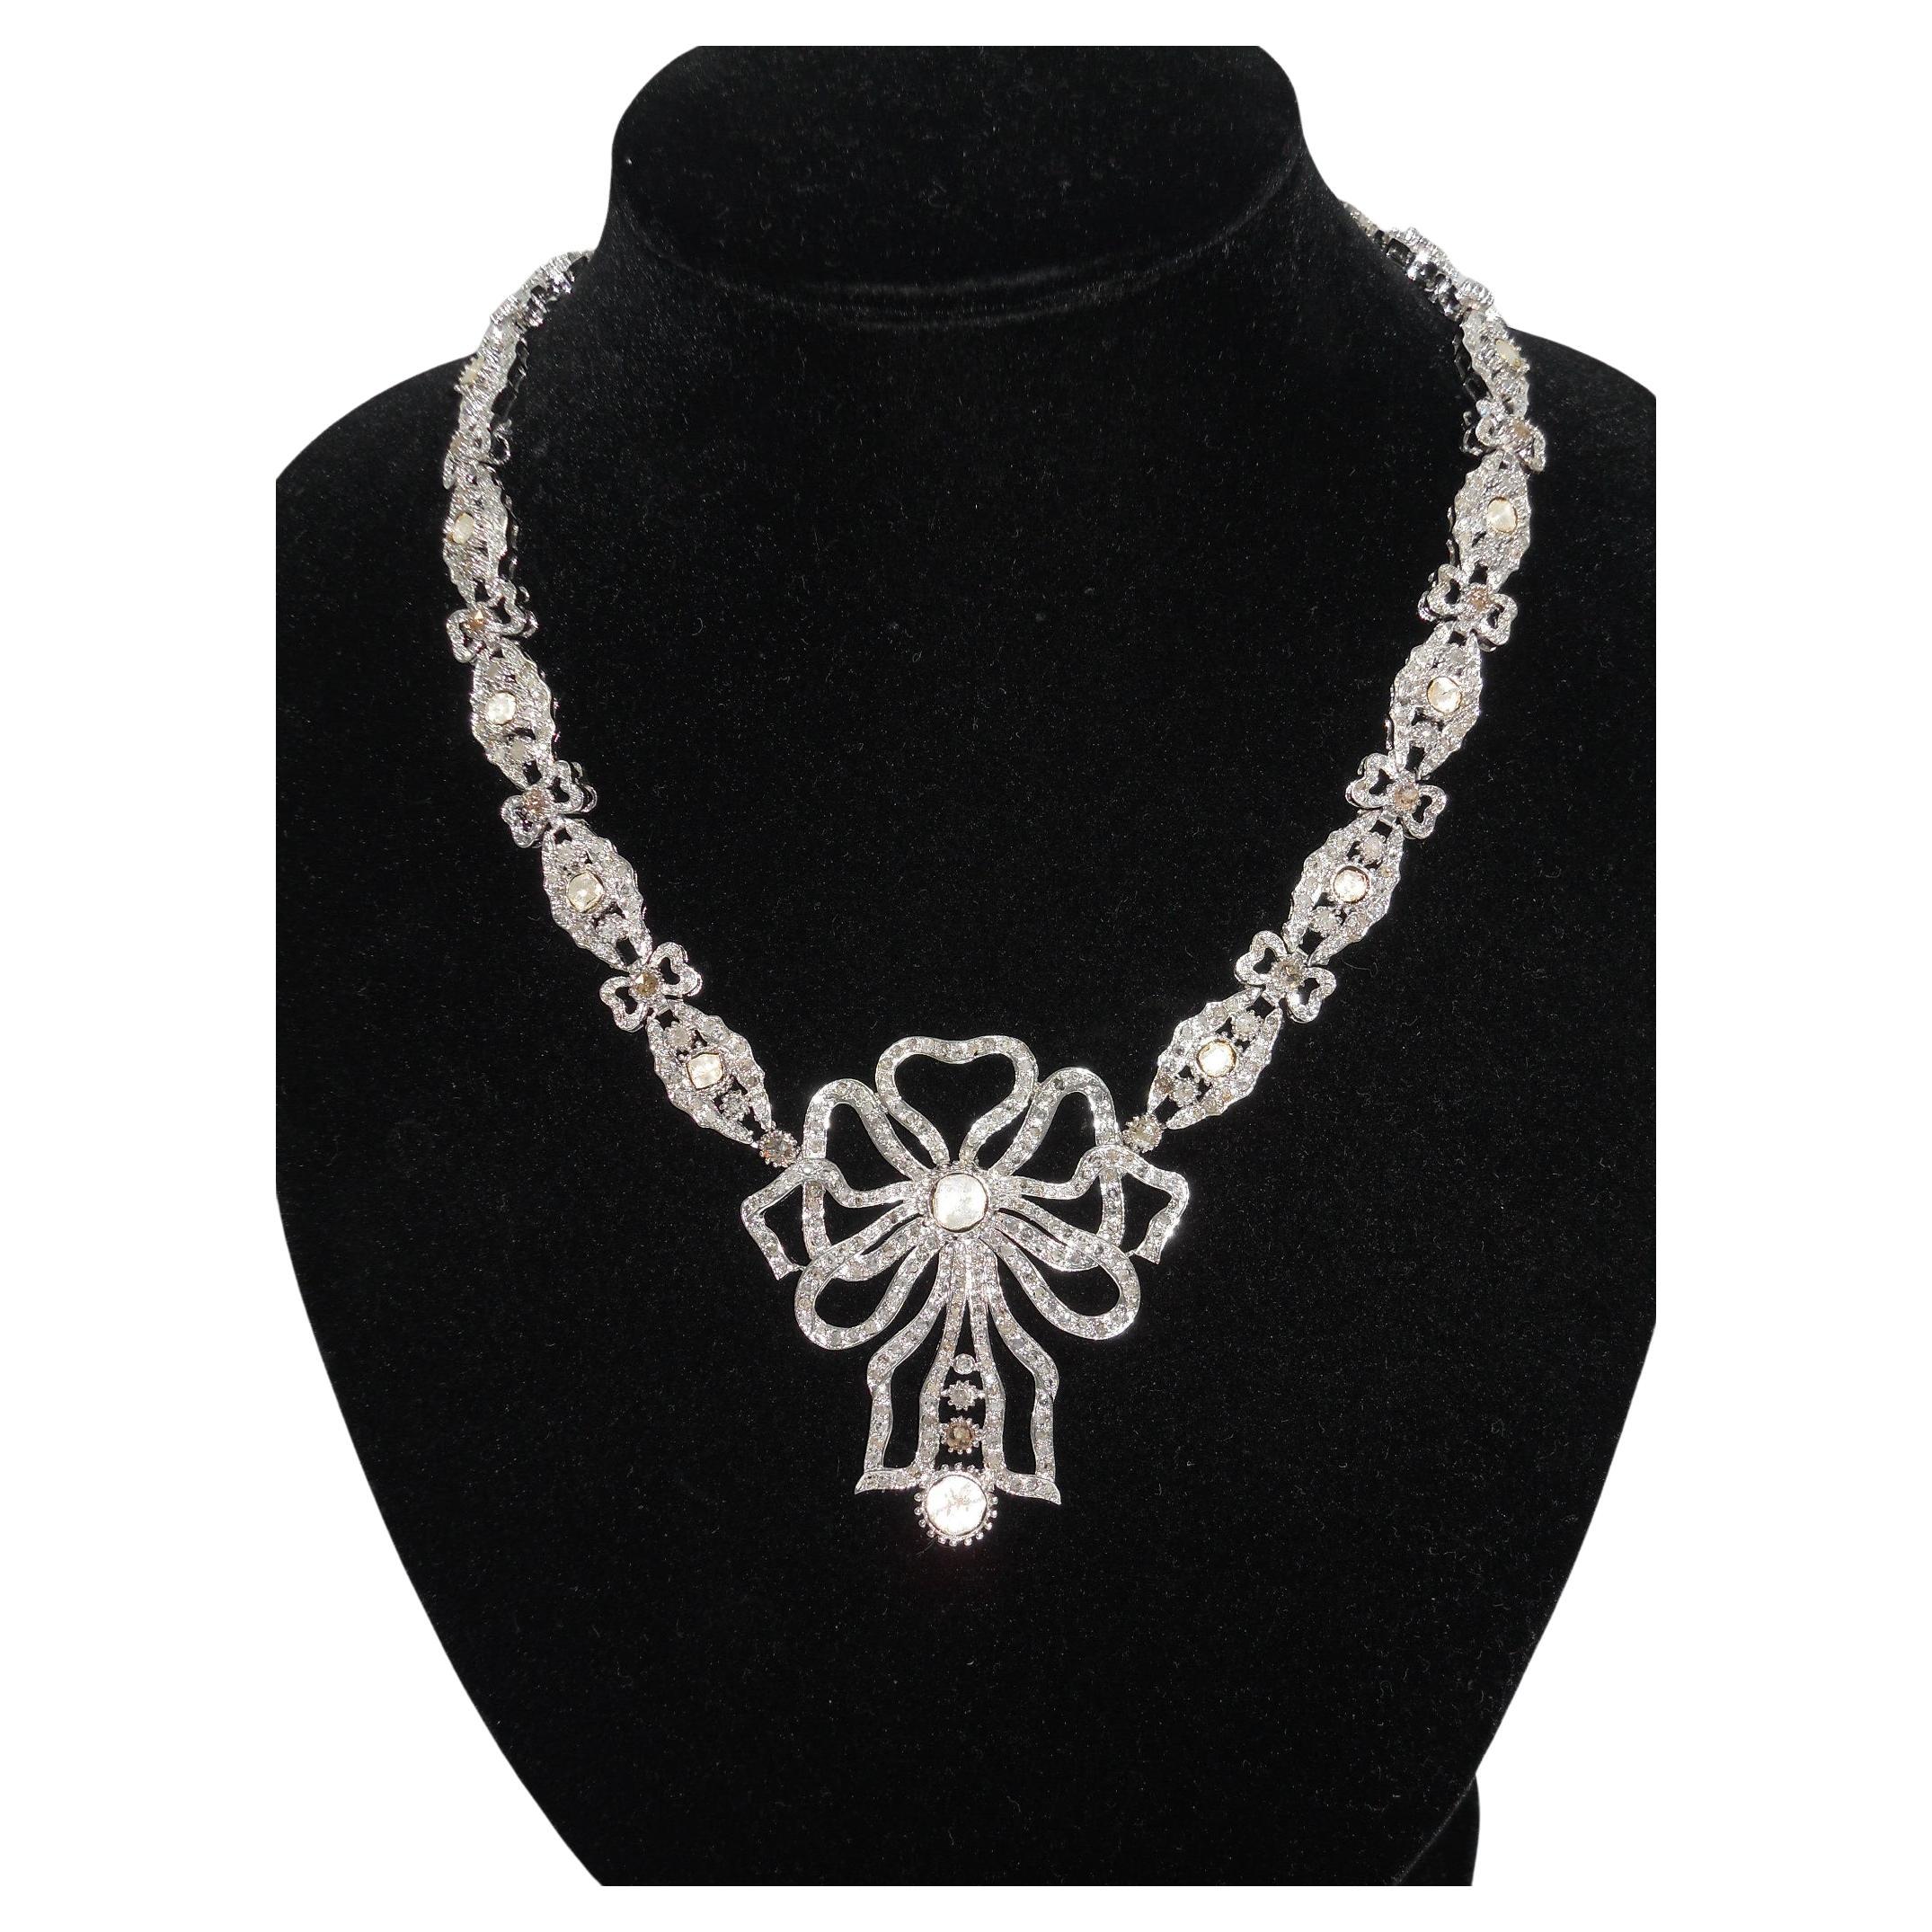 Zertifizierte natürliche ungeschliffene Diamanten im Rosenschliff Sterling Silber Band Schleife Halskette